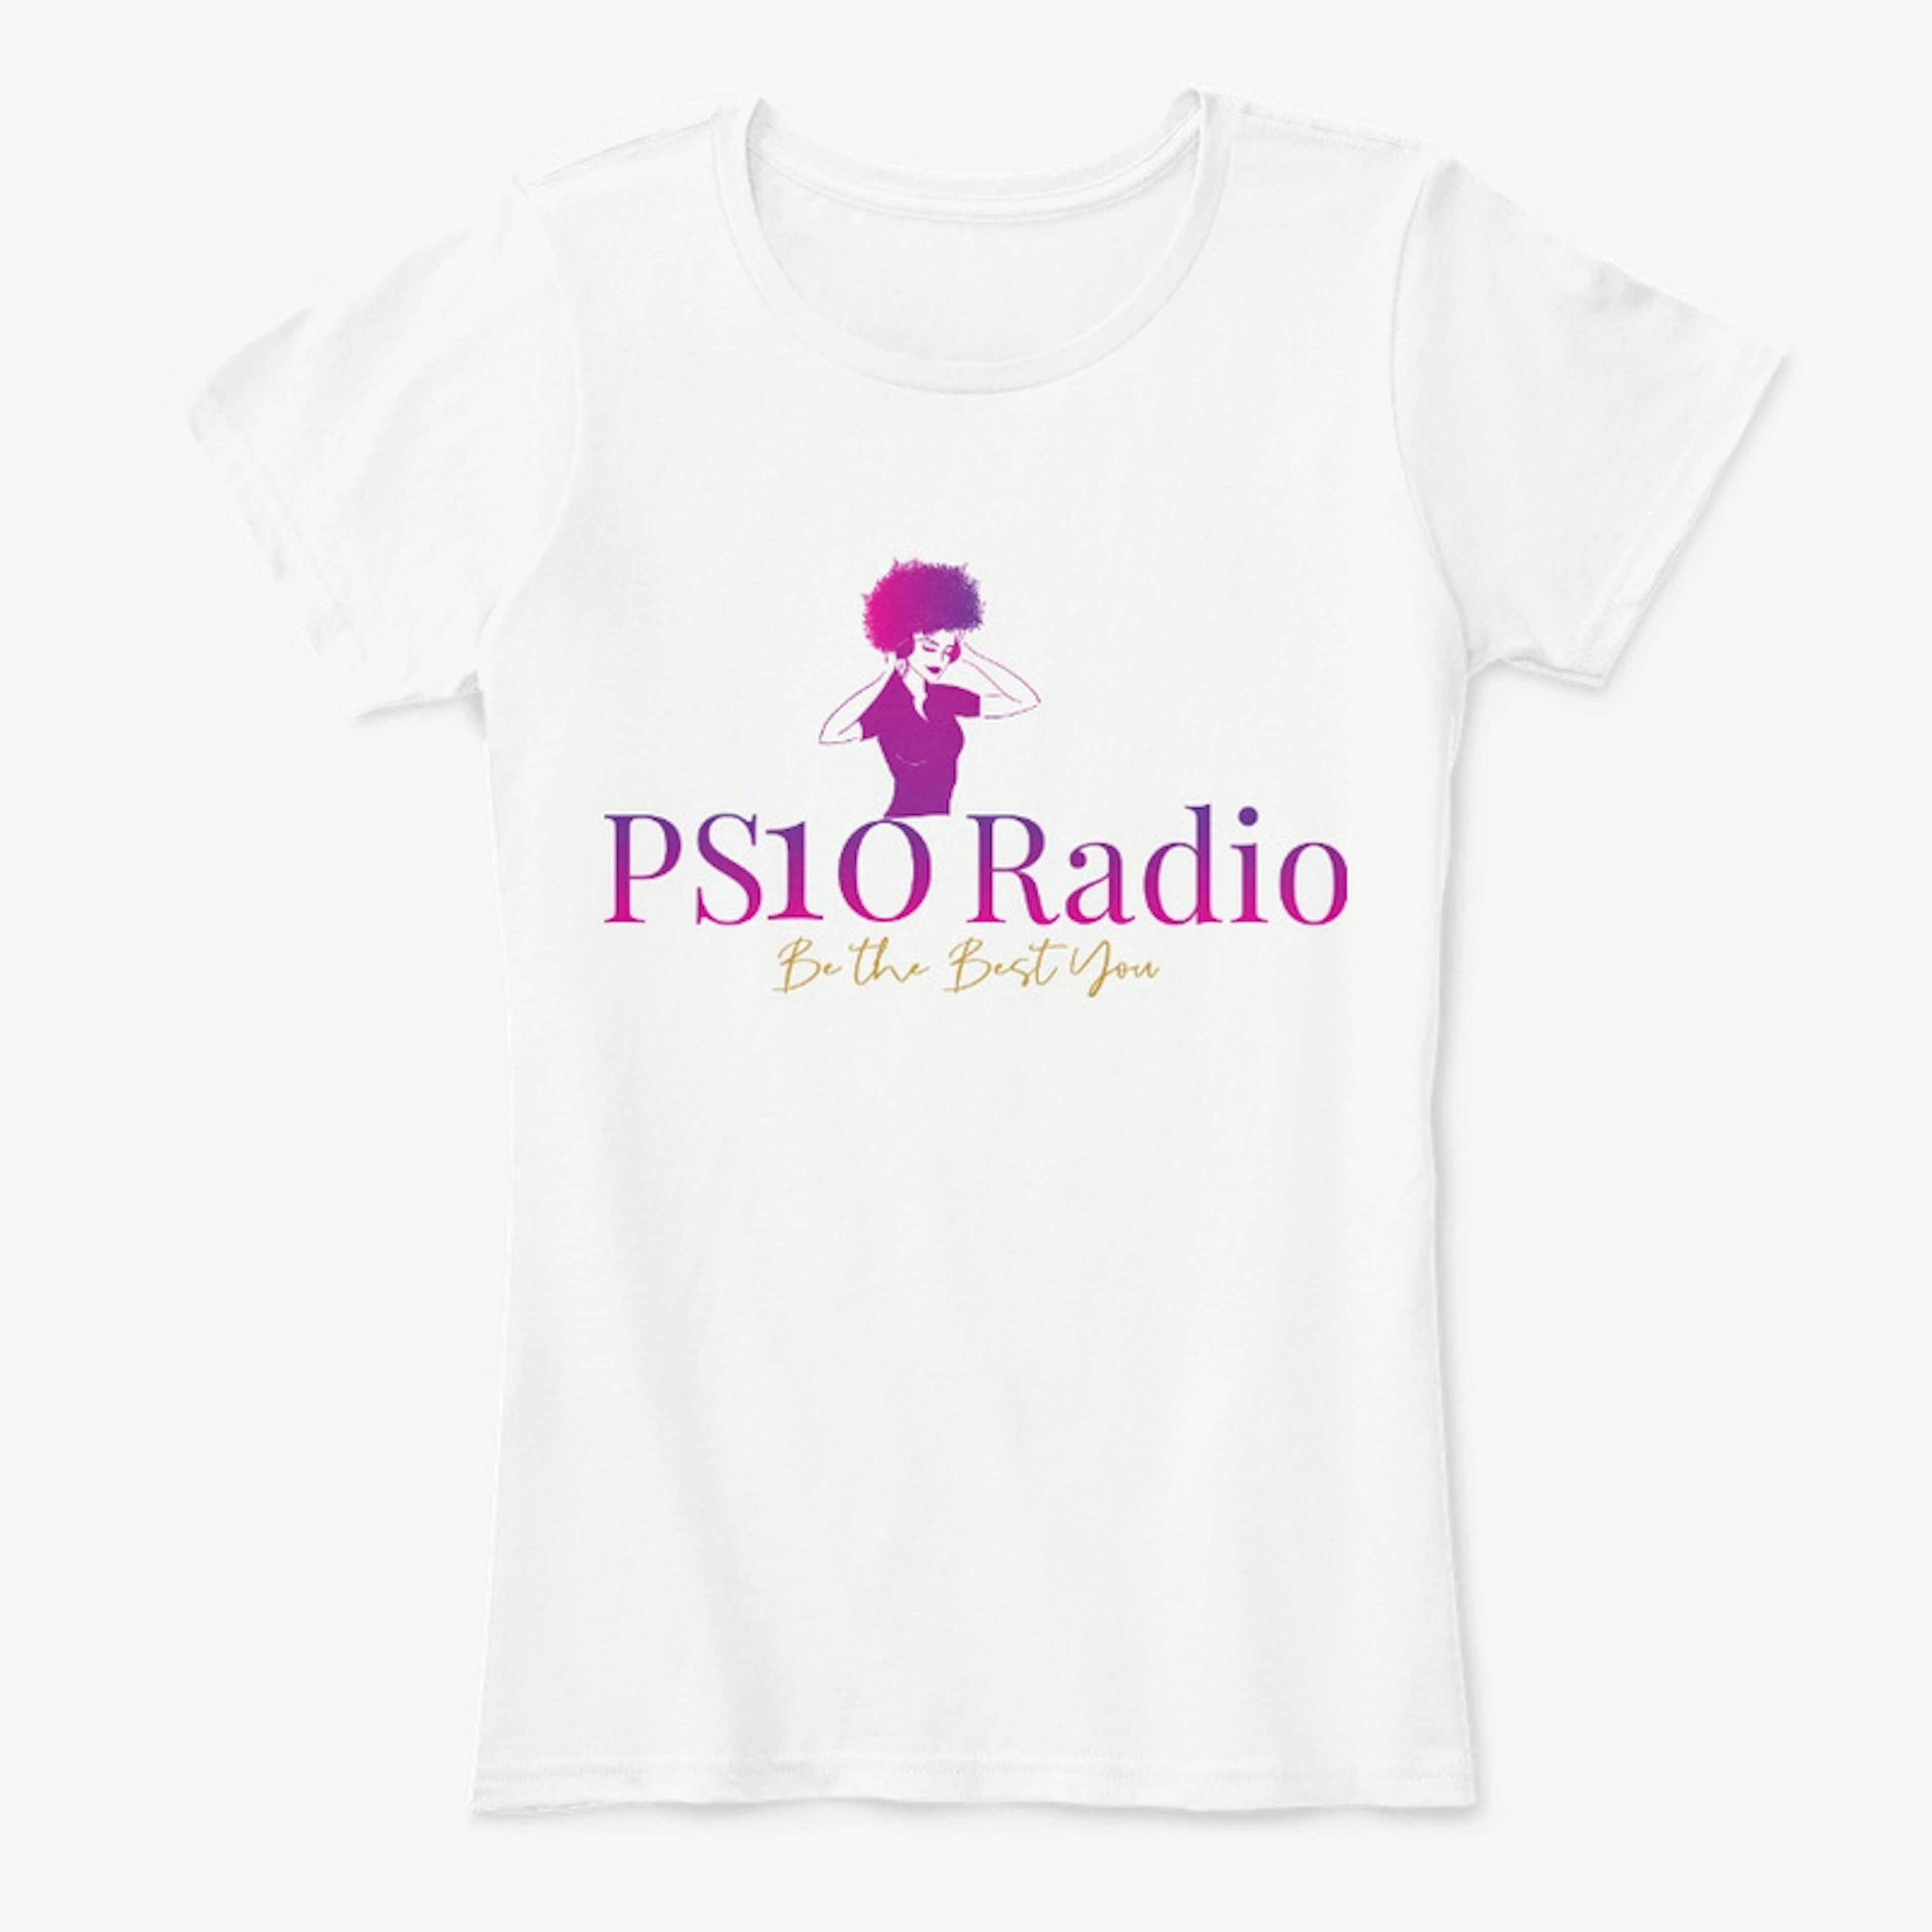 PS10 Radio Tee